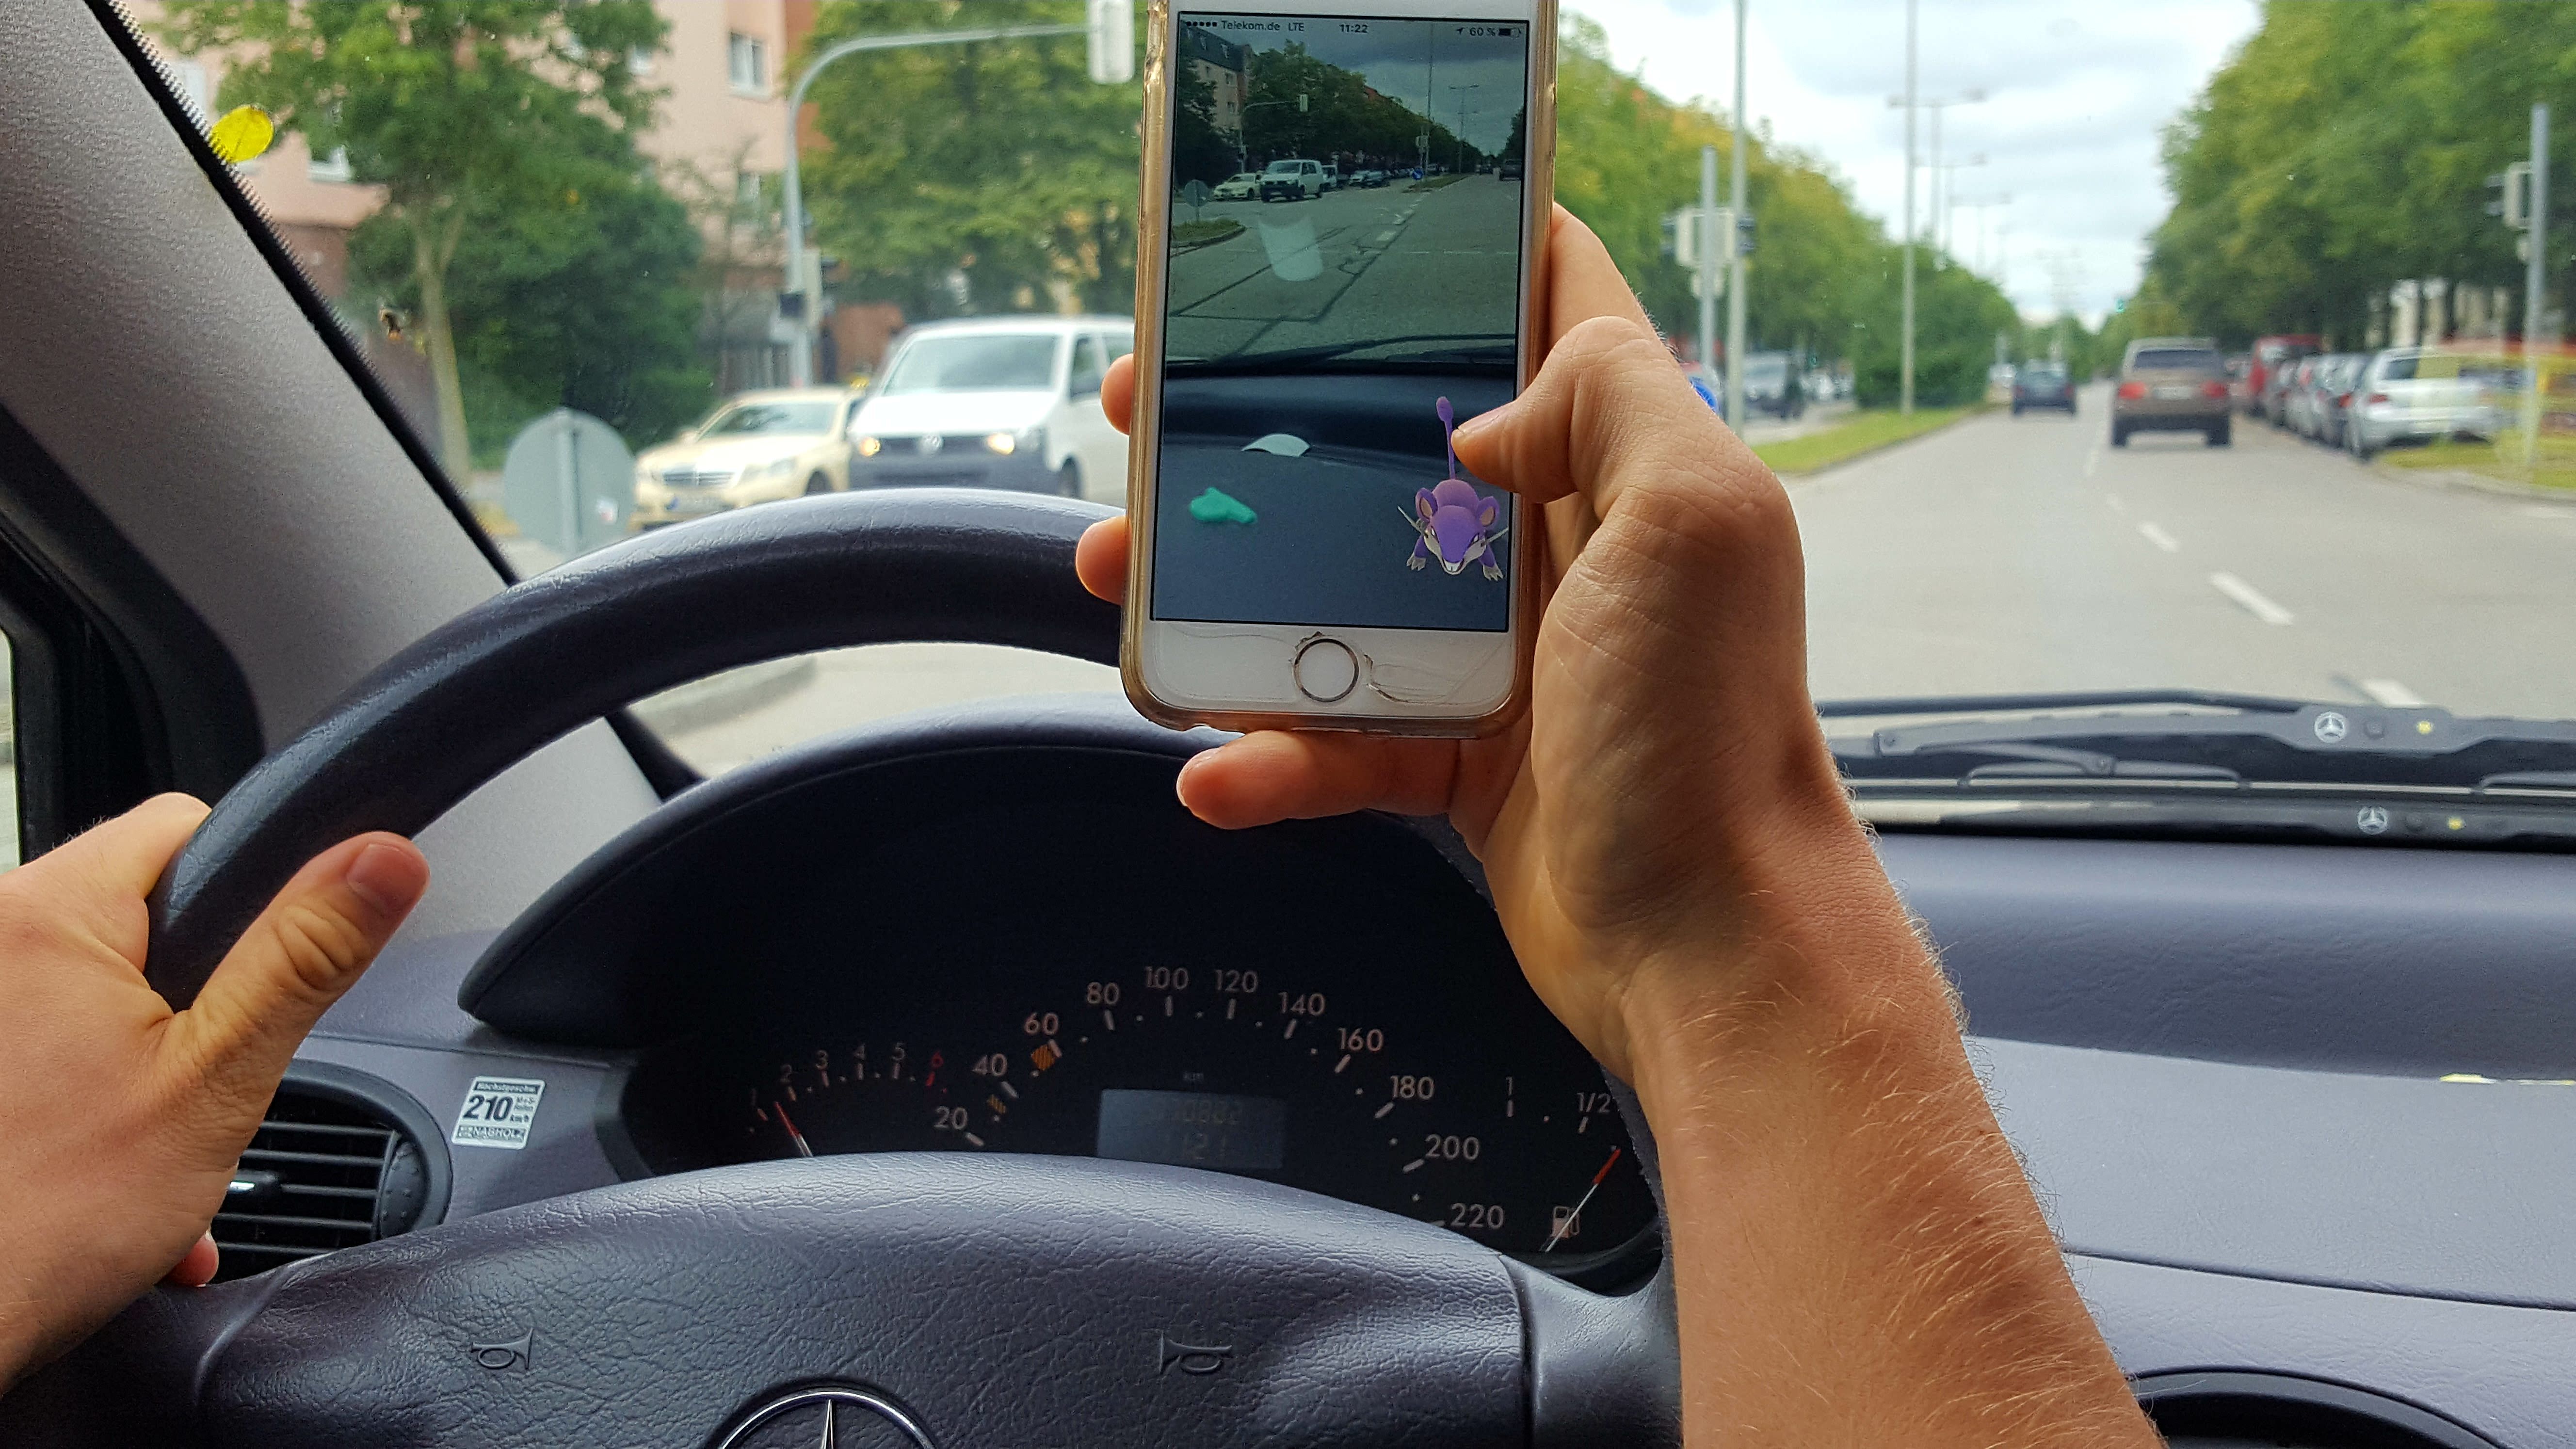 Pokémon Go – kein Spiel für den Straßenverkehr - ADAC warnt vor der Gefahr durch Ablenkung bei neuem Handyspiel - Eltern sollten Spiel mit Kindern ausprobieren (Foto: ADAC)0